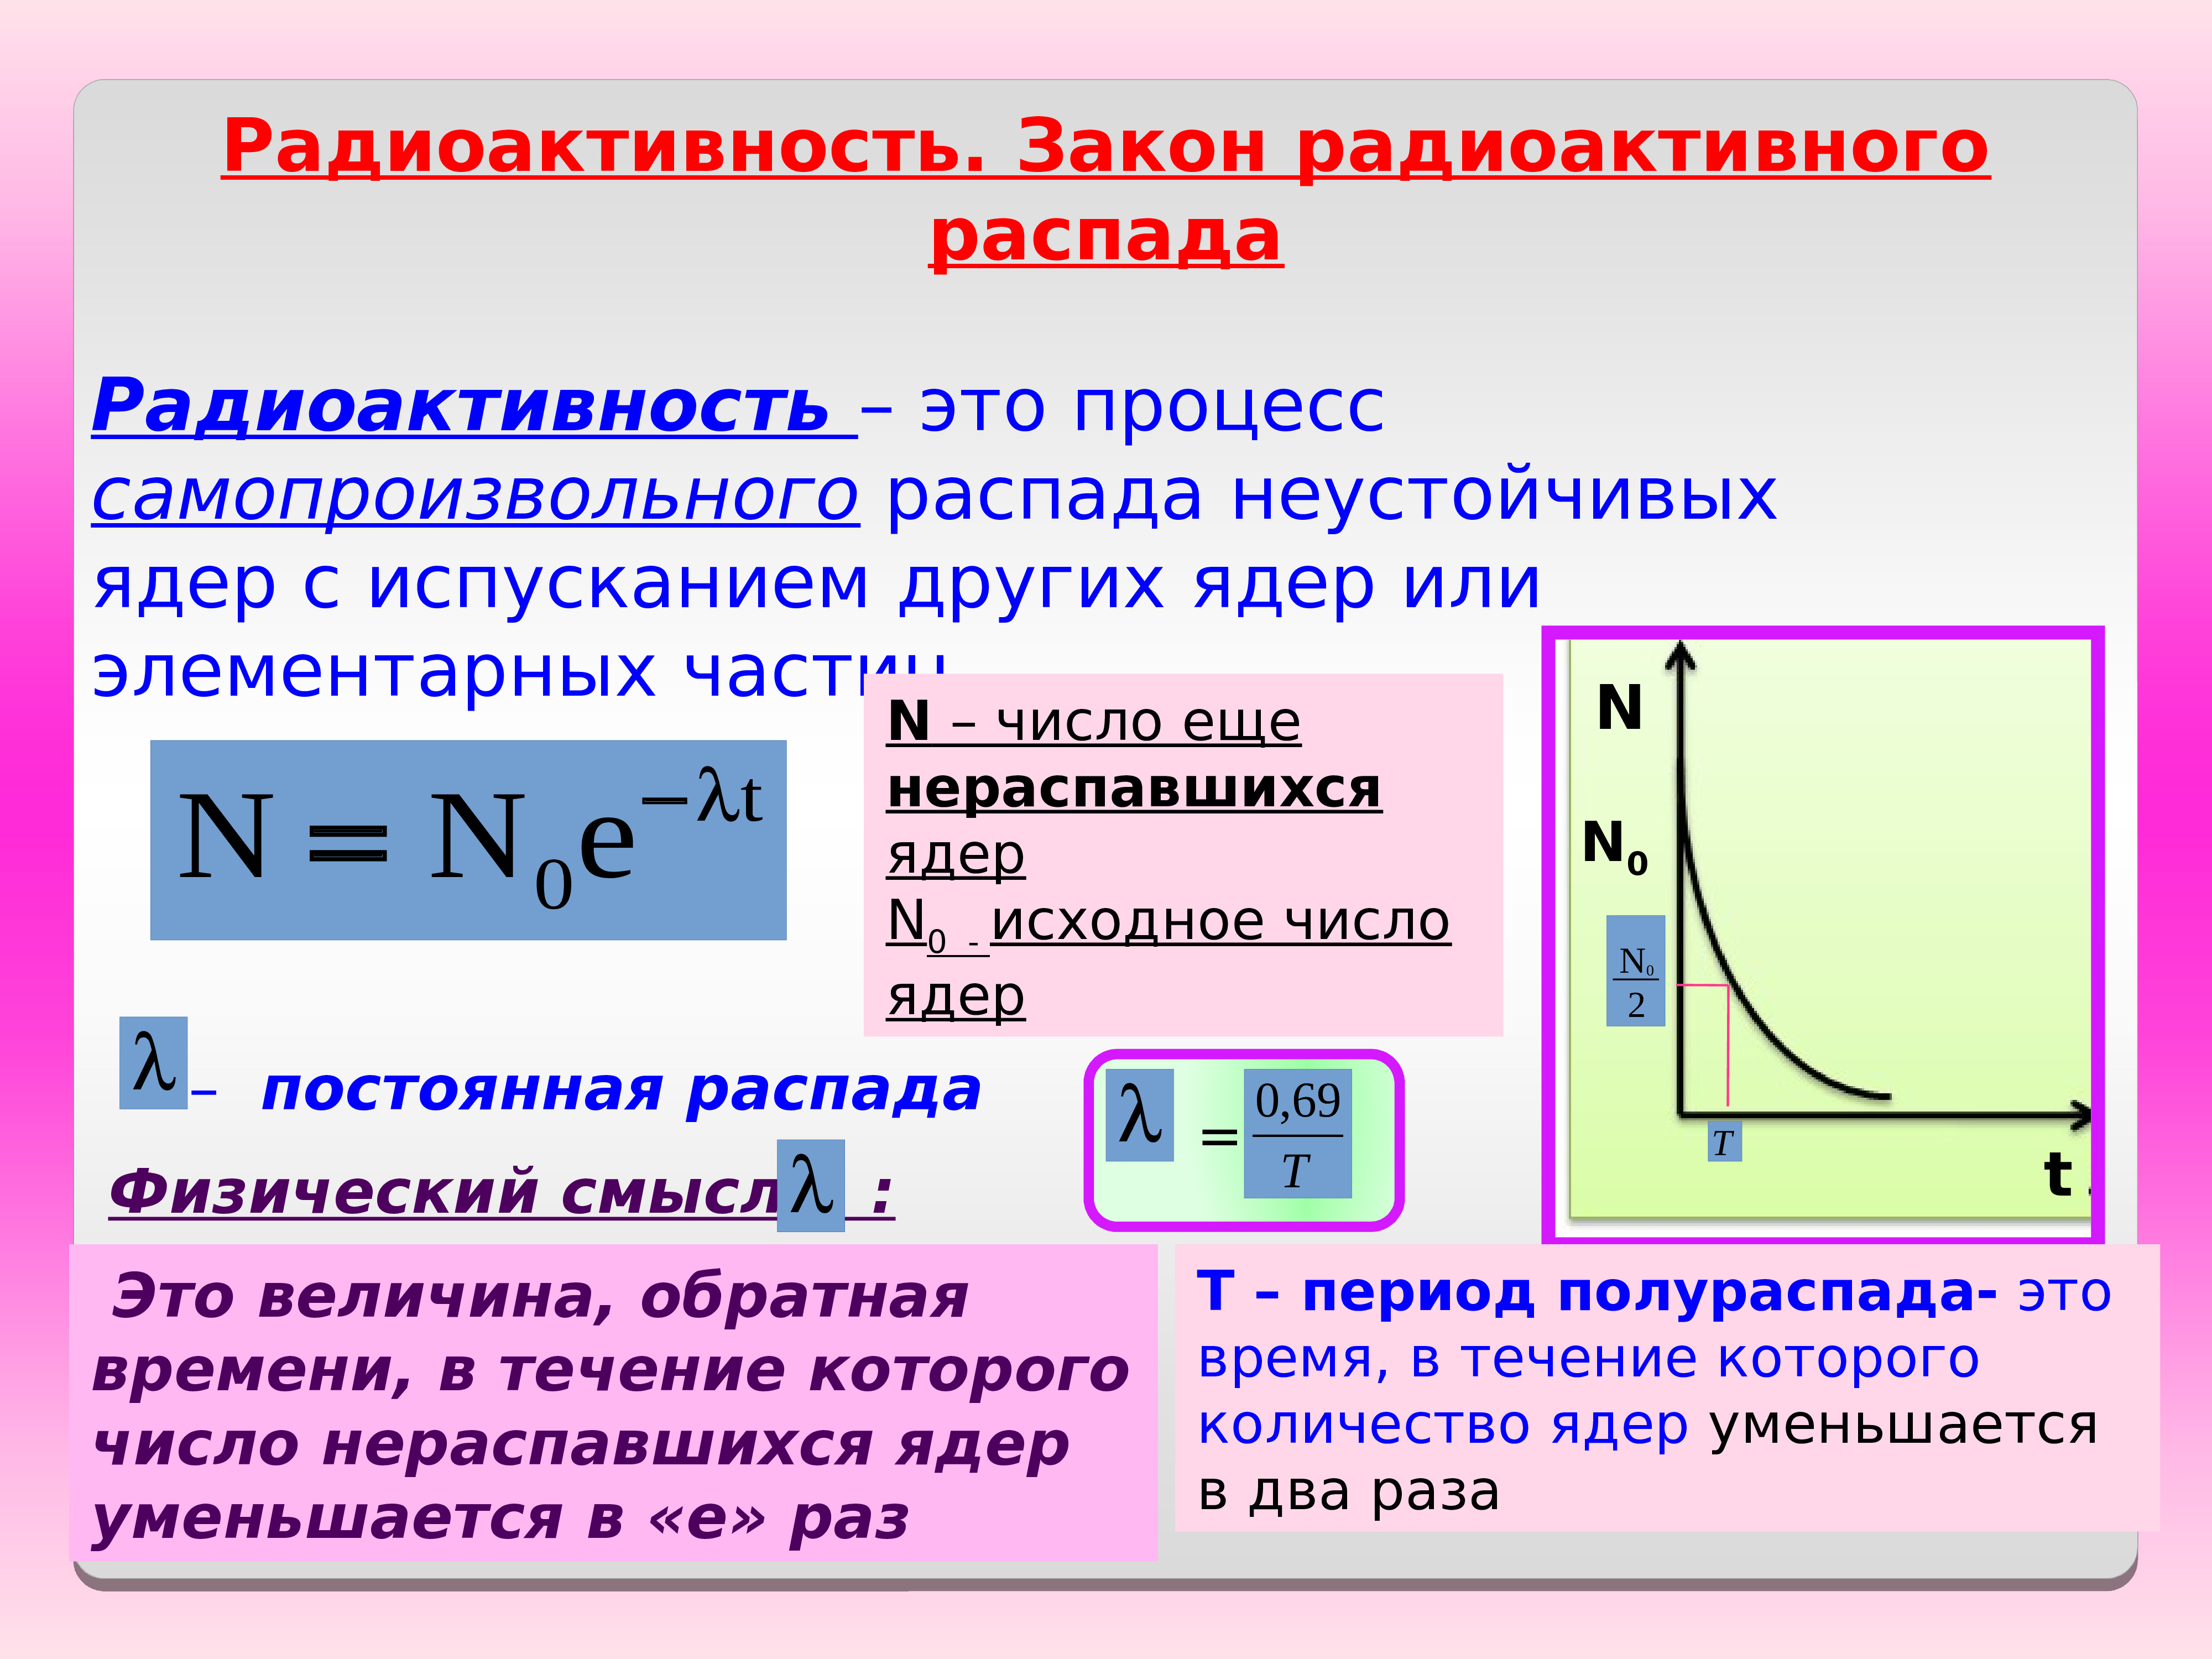 Радиоактивный распад период полураспада. Основной закон радиоактивного распада. Закон радиоактивного ра. Основному закону радиоактивного распада. Естественная радиоактивность закон радиоактивного распада.